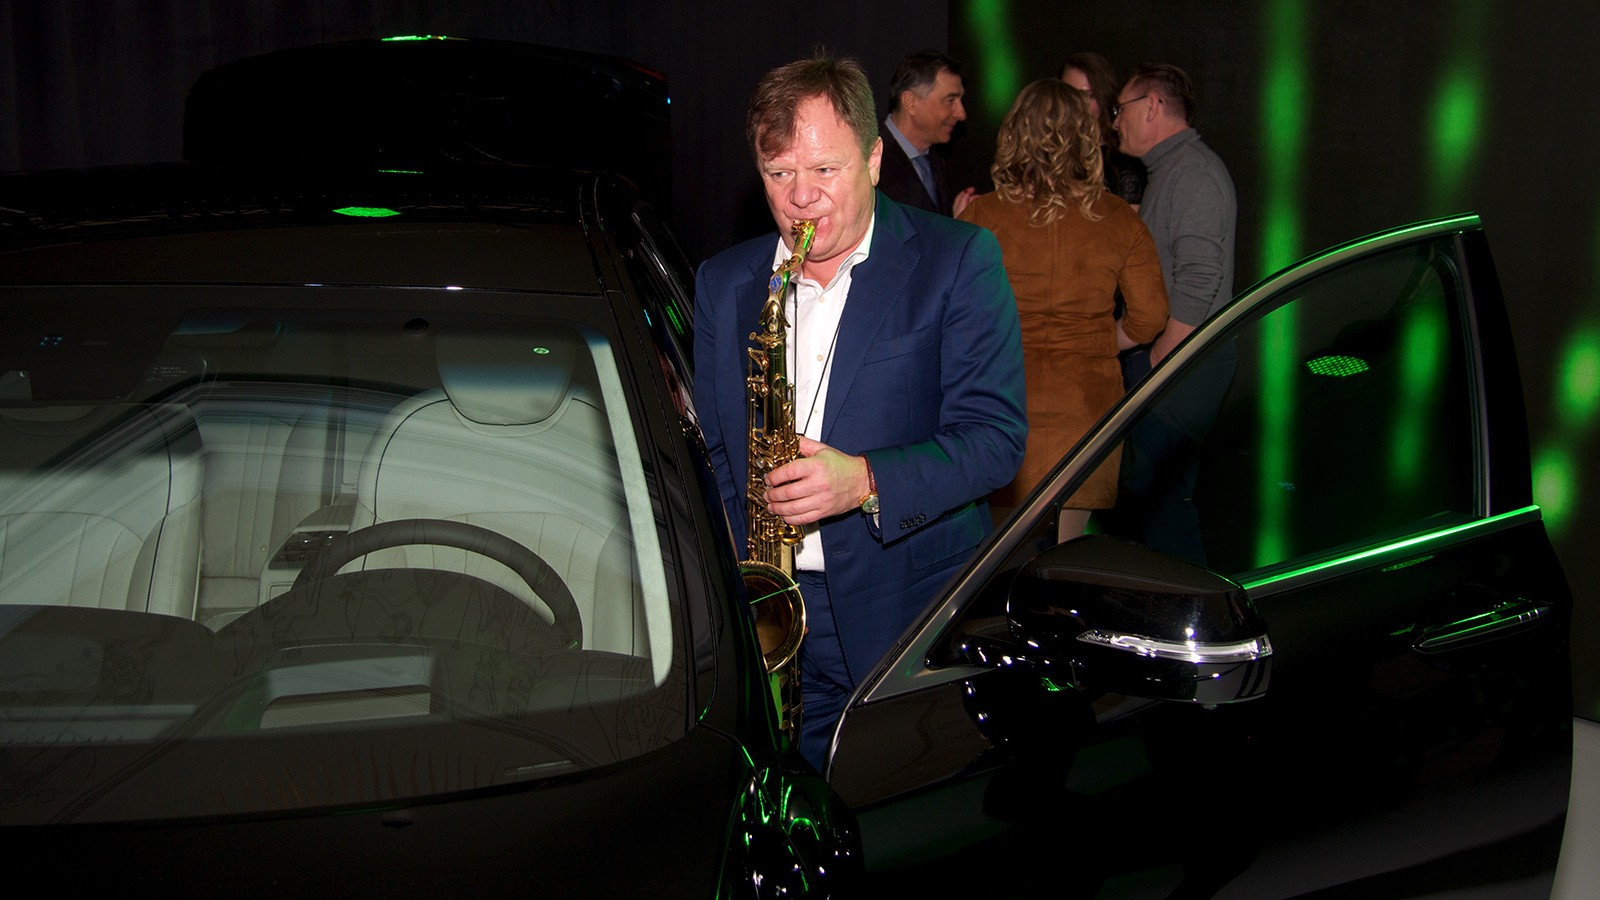 Элитарность нового автомобиля подчеркнуло выступление звезды мирового джаза — саксафониста Игоря Бутмана